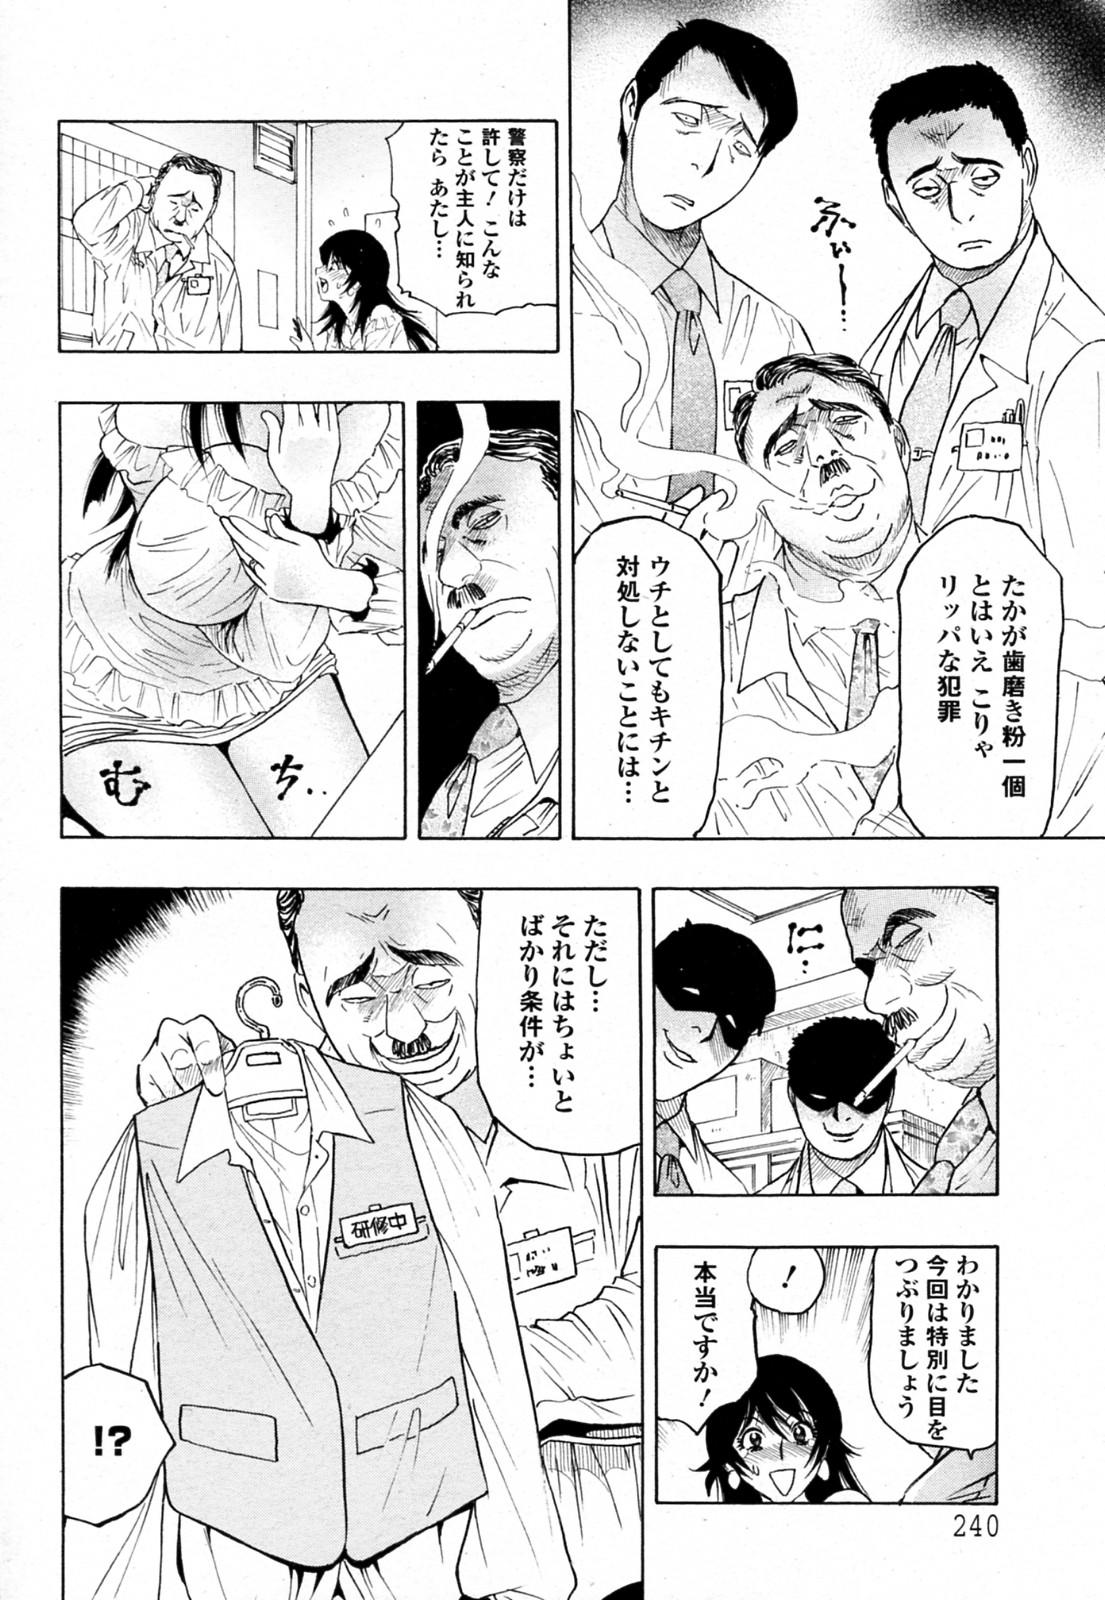 Oil Biniku no Tsugunai Anime - Page 4